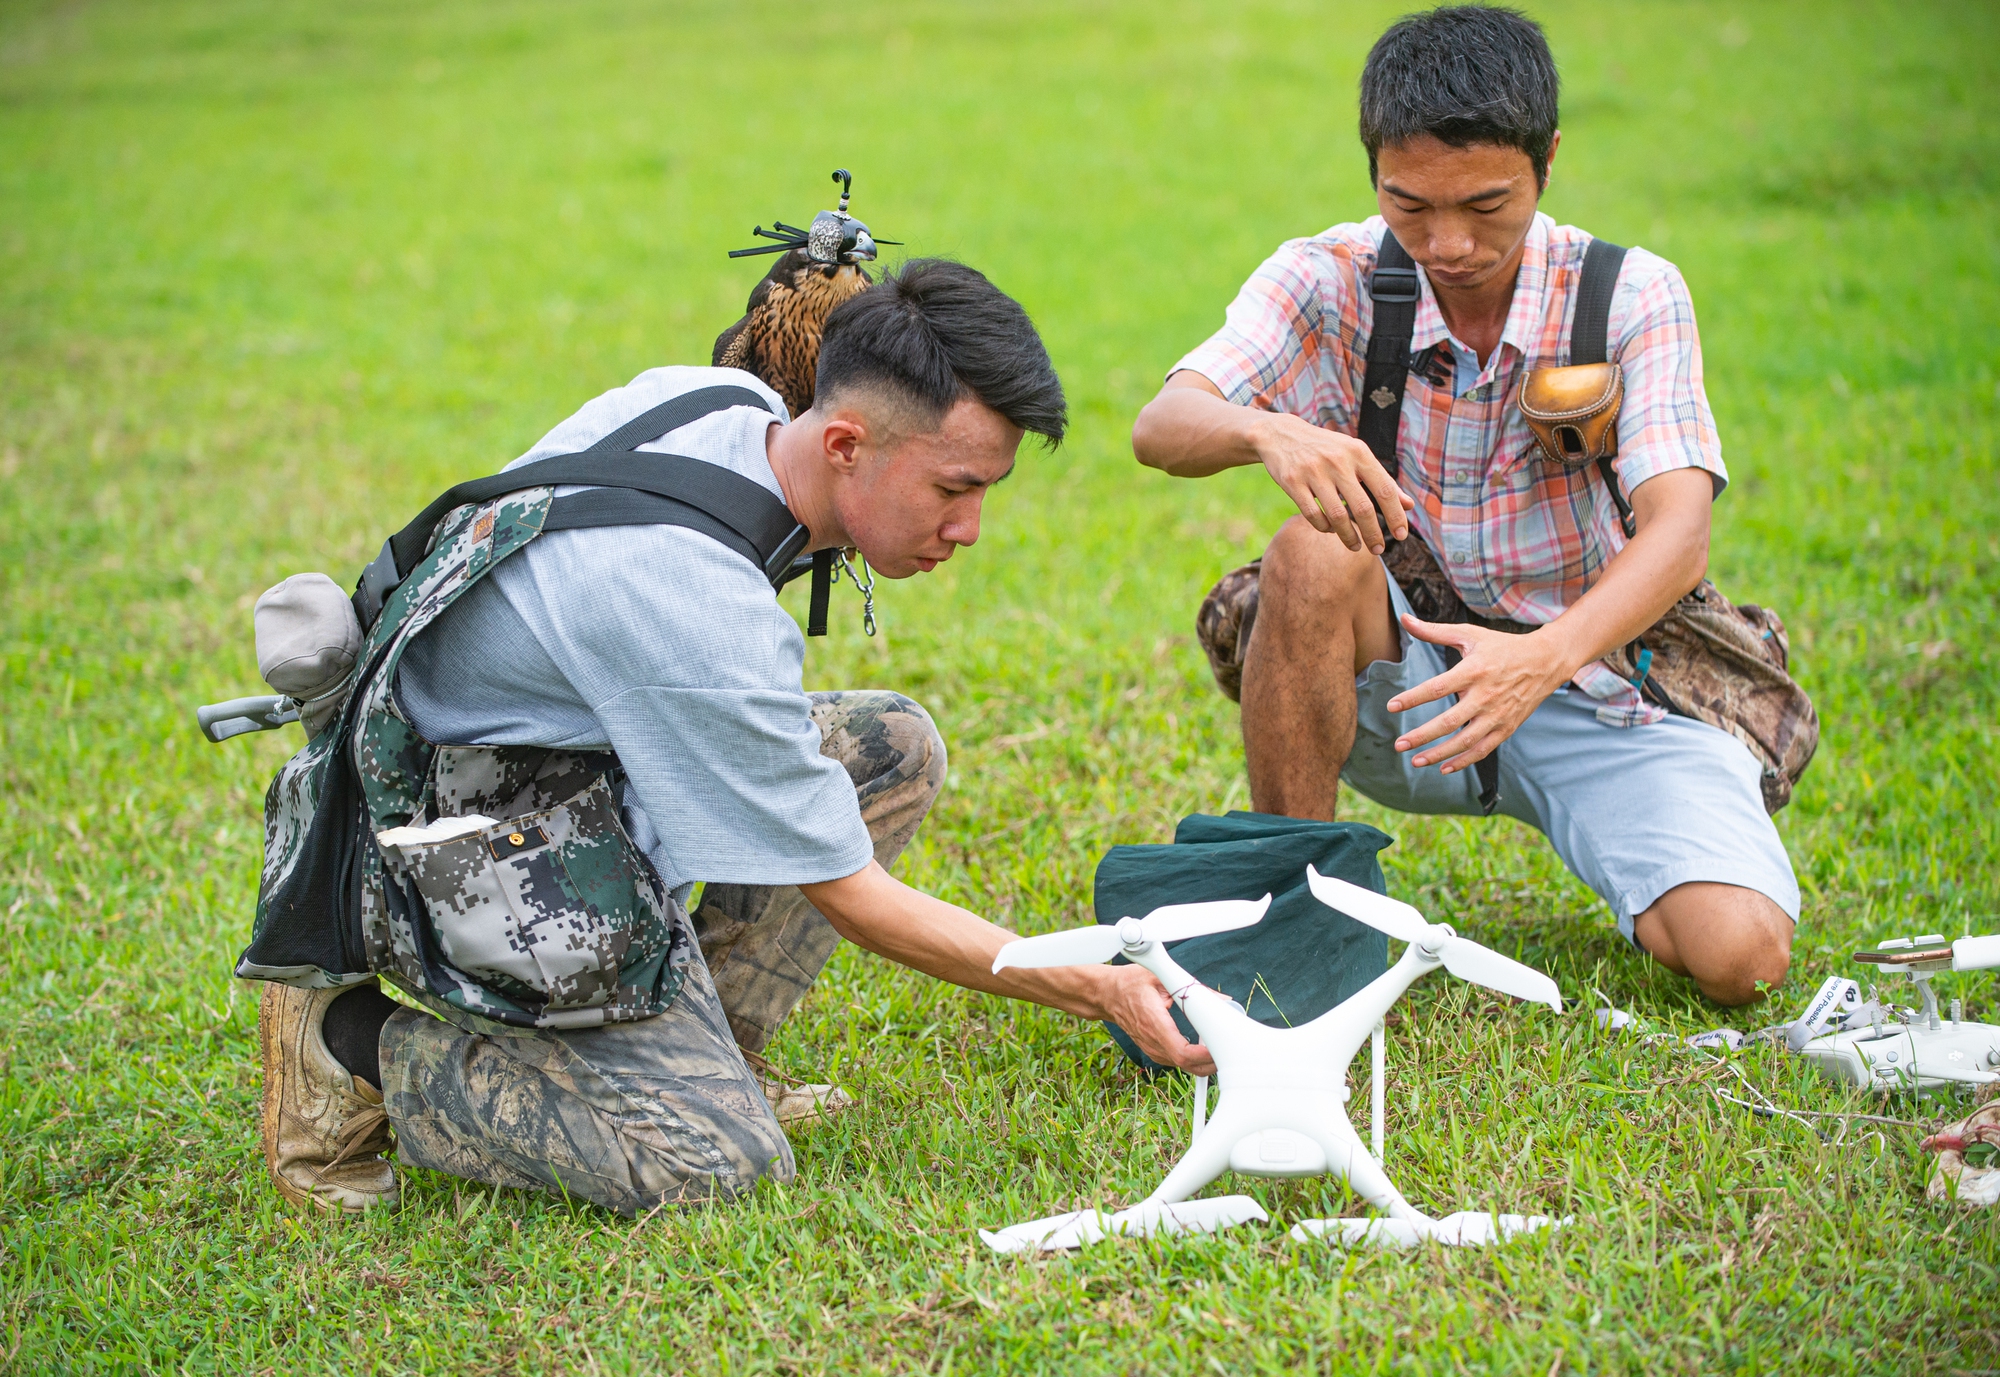 Ảnh: Dùng flycam, định vị GPS, tiêu tốn hàng chục triệu huấn luyện chim săn mồi để giải trí - Ảnh 7.